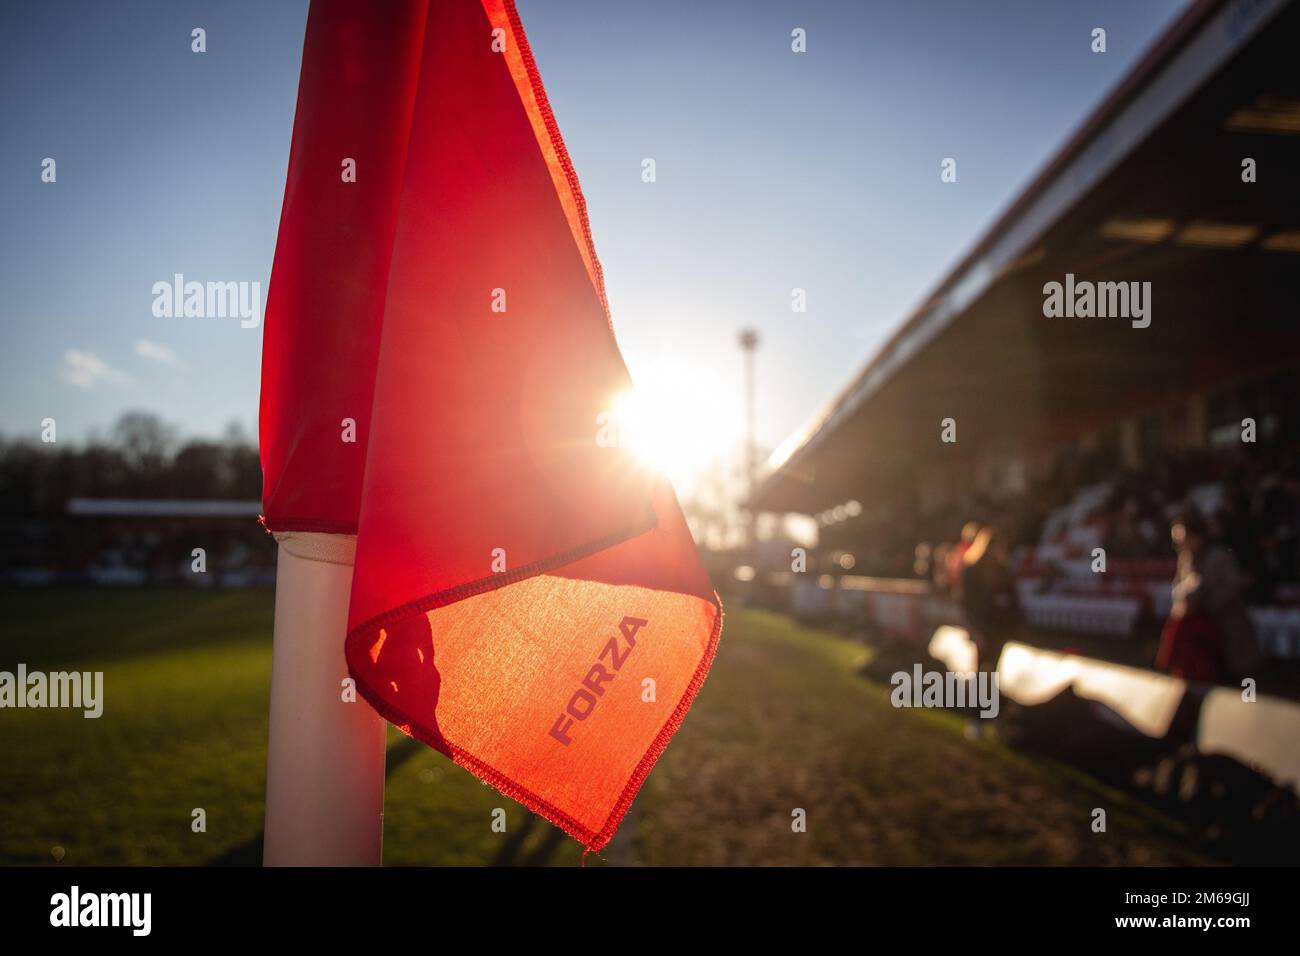 Nahaufnahme der Eckflagge auf dem Fußballplatz der unteren Liga in Großbritannien vor Sonnenuntergang. Stockfoto